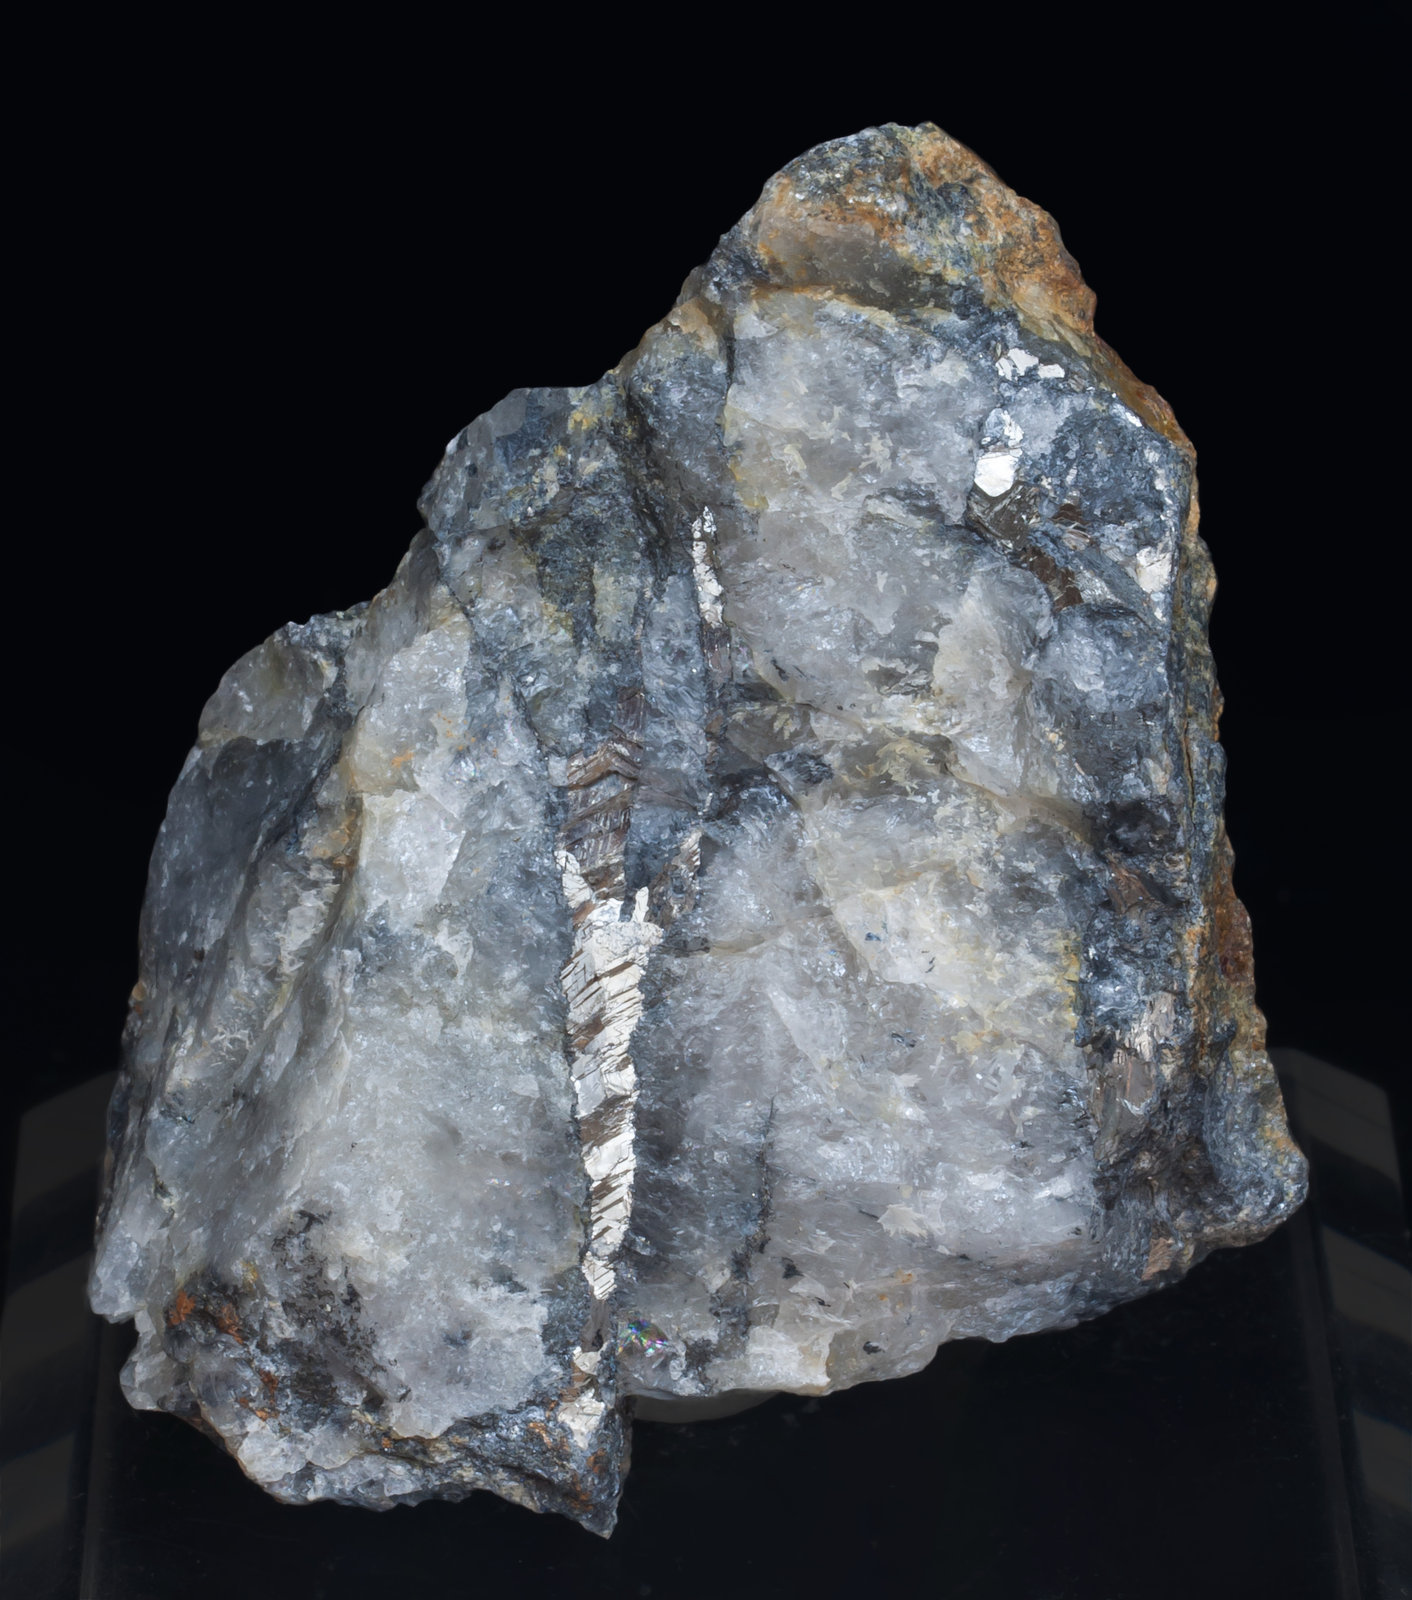 specimens/s_imagesAJ5/Antimony-NG14AJ5f.jpg